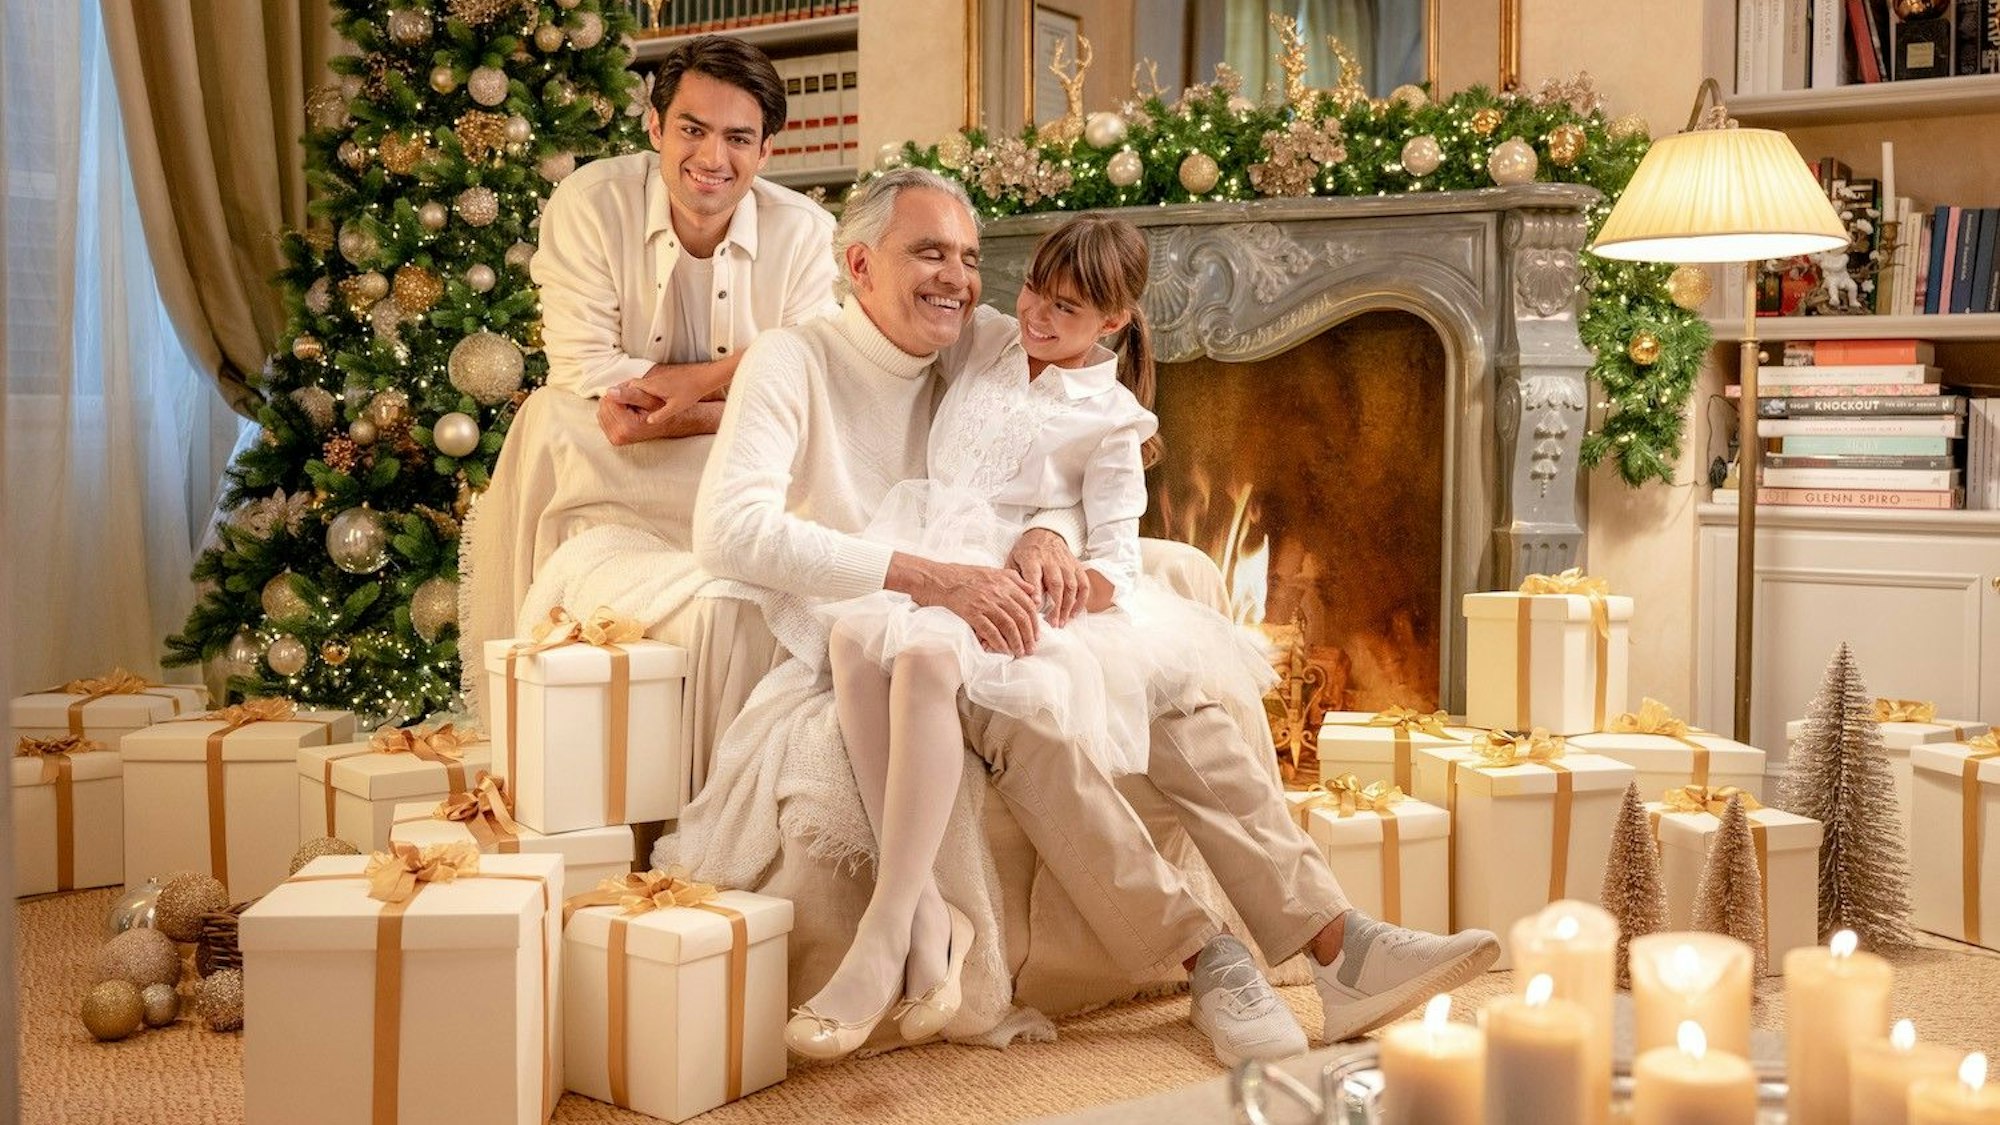 Andrea Bocelli an Weihnachten mit Familie, links ein großer, reichlich geschmückter Weihnachtsbaum, davor Weißgold verpackte Geschenke. Die Kerzen leuchten und alle strahlen.